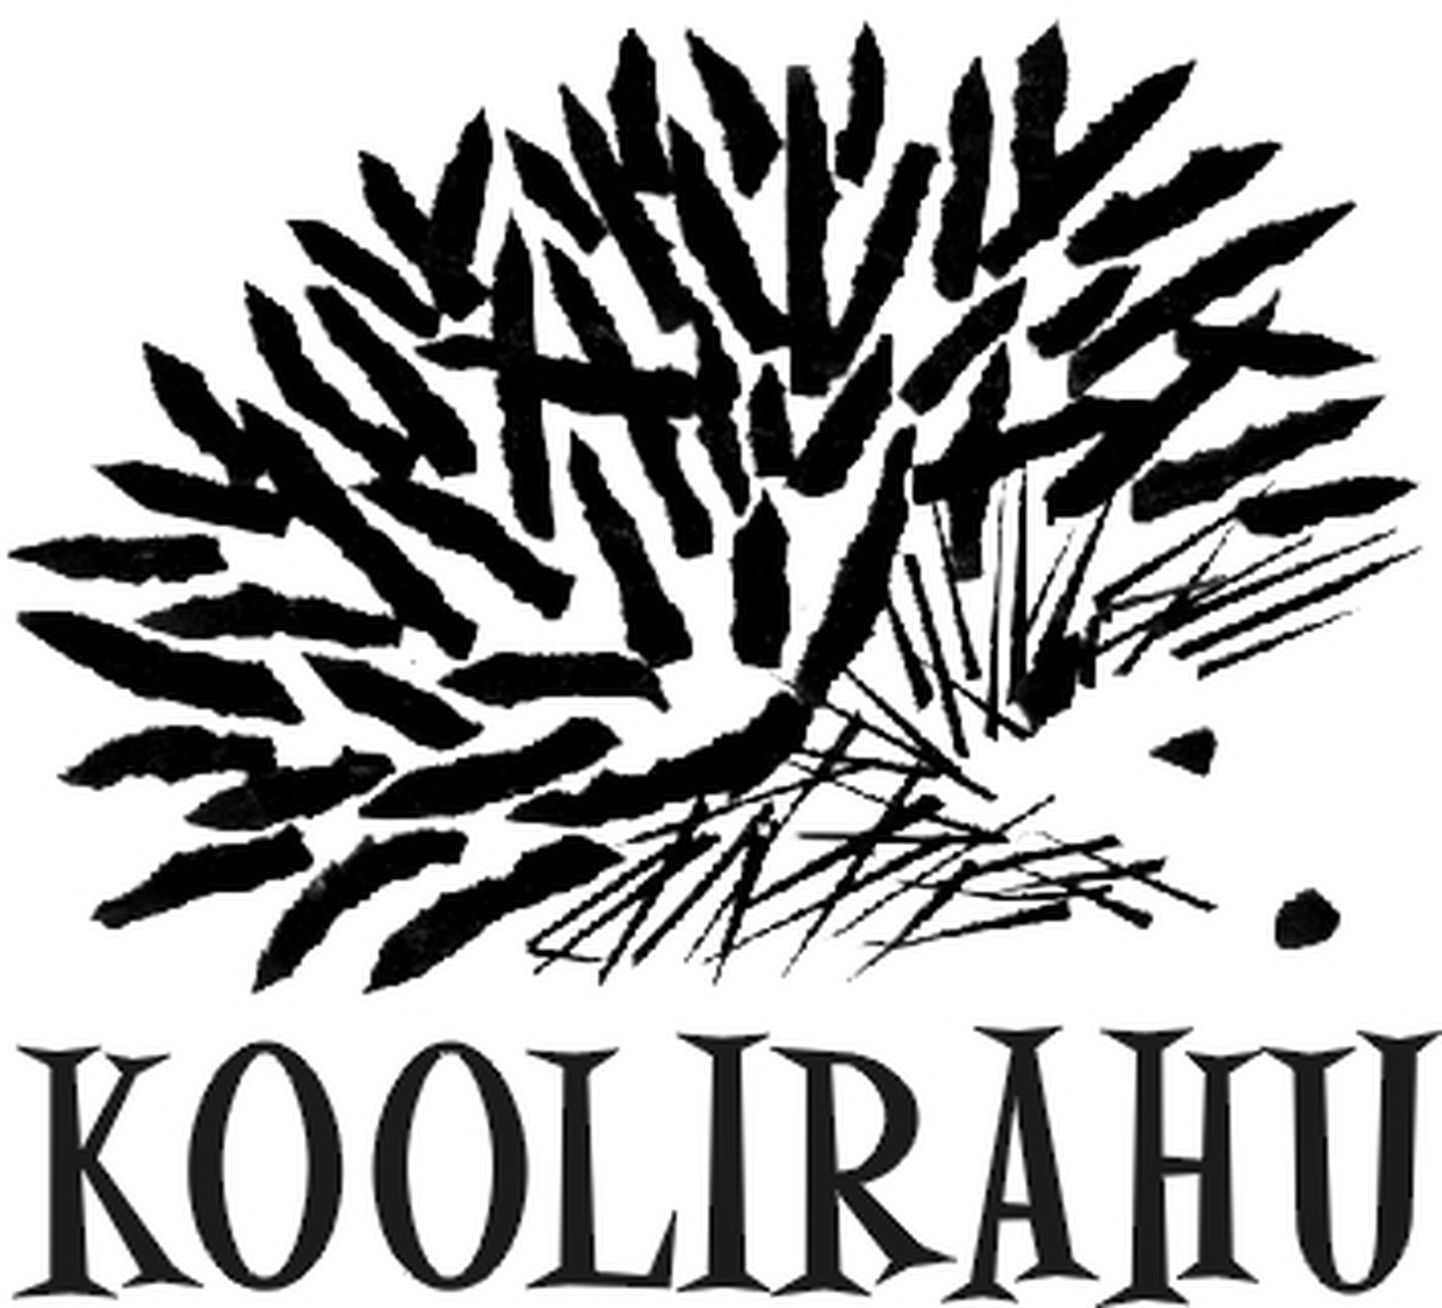 Koolirahu logo.